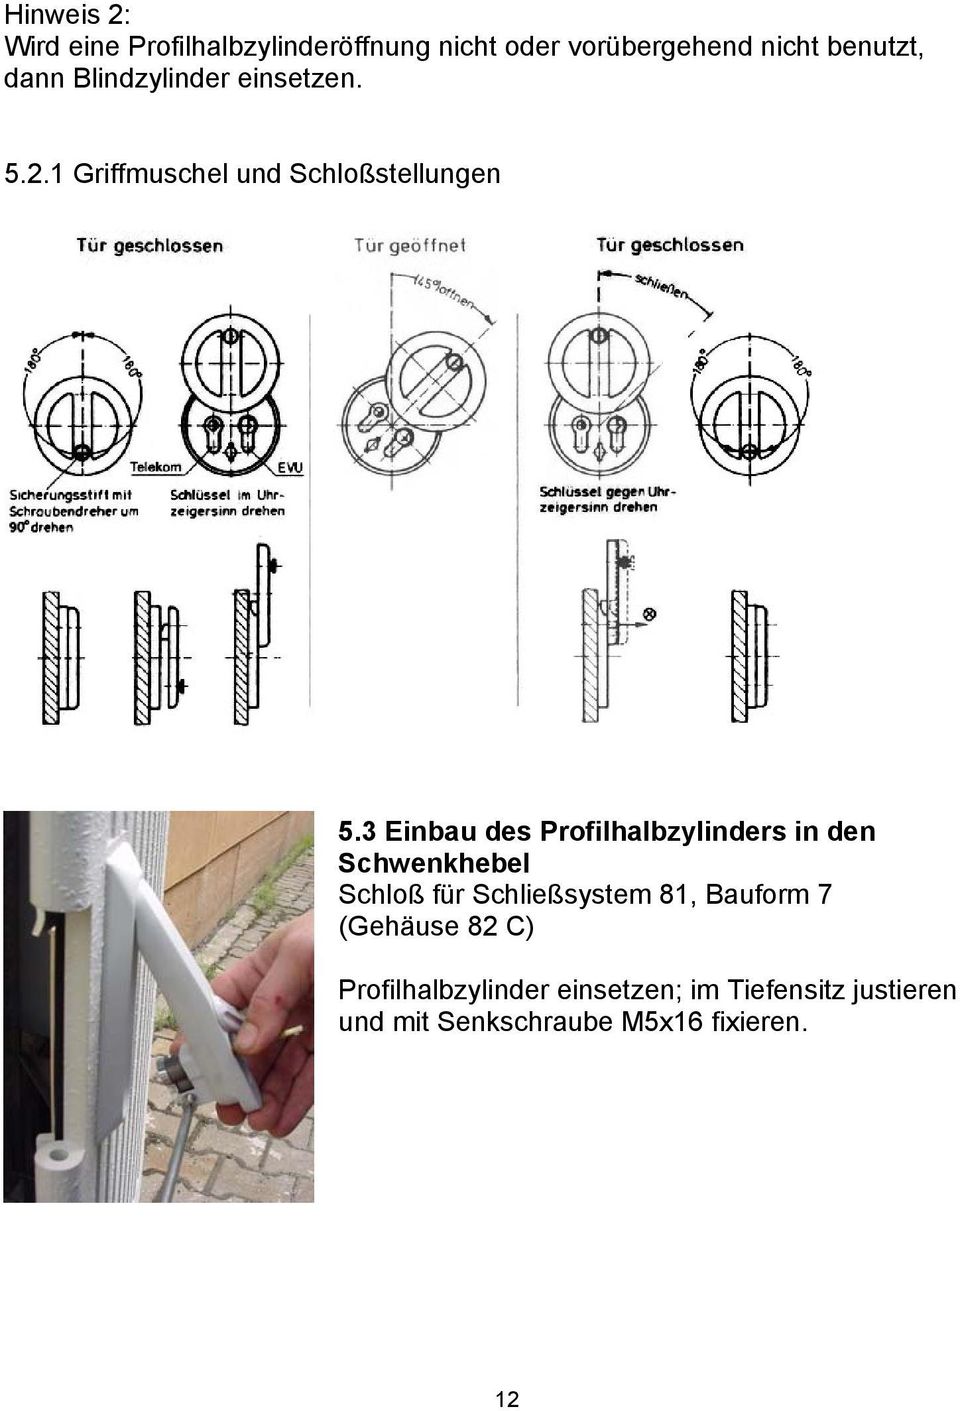 3 Einbau des Profilhalbzylinders in den Schwenkhebel Schloß für Schließsystem 81, Bauform